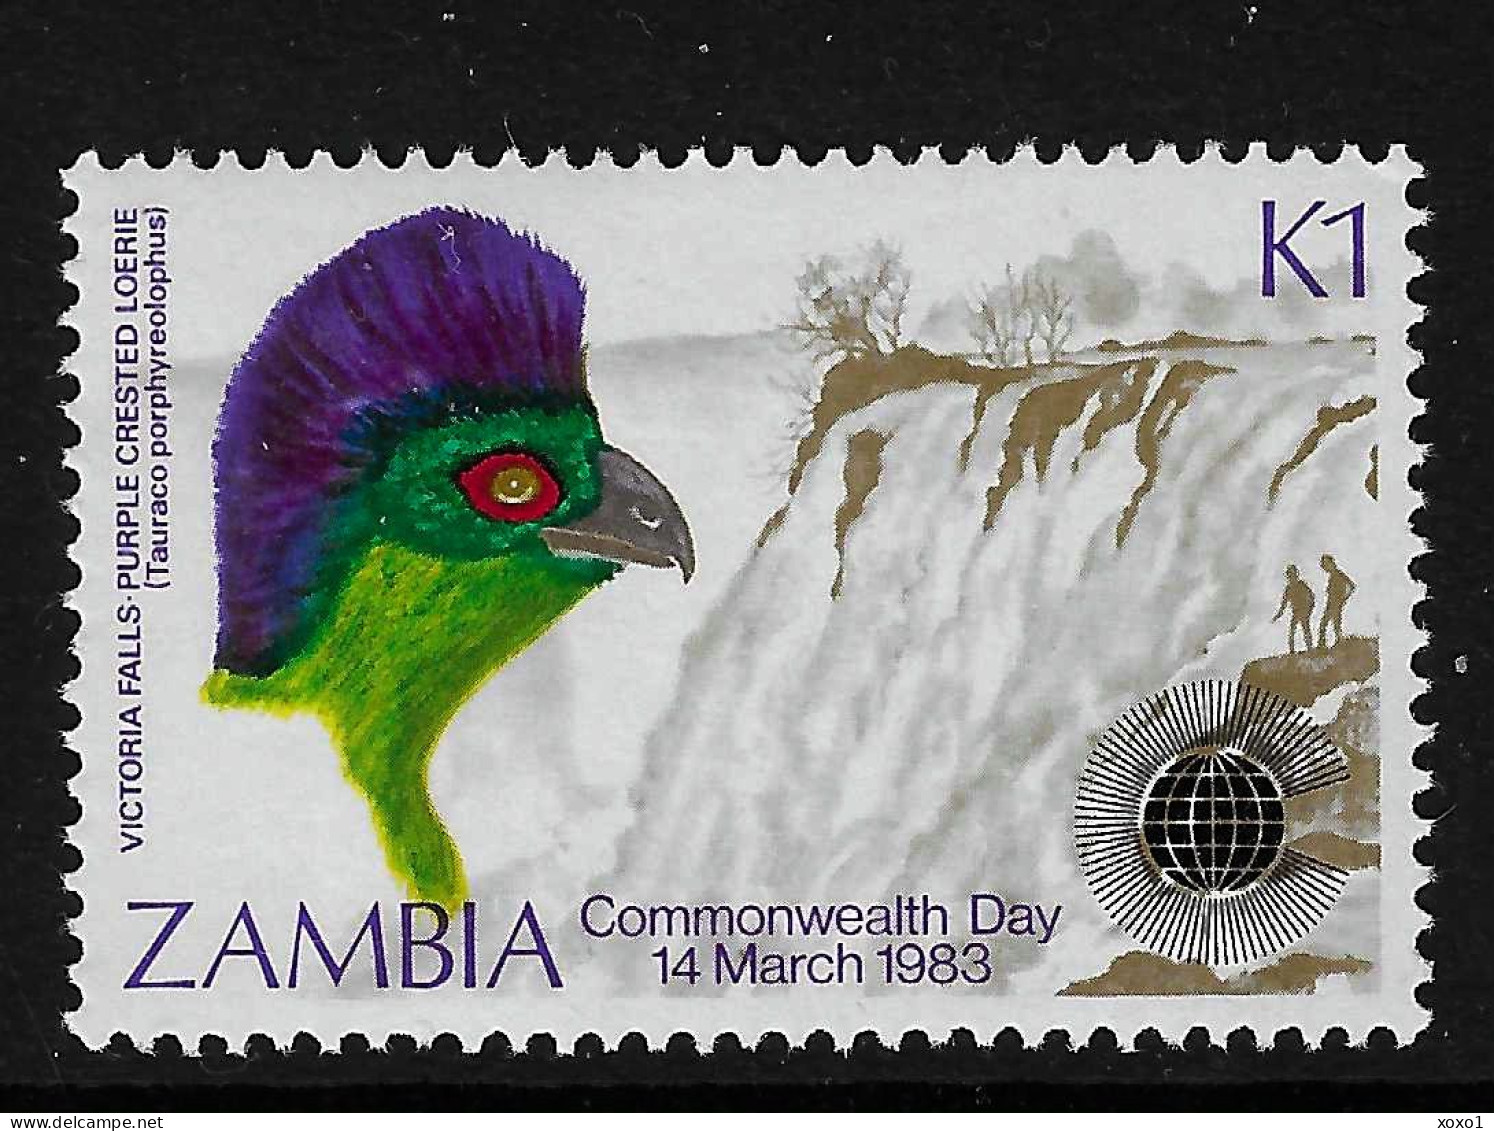 ZAMBIA 1983 MiNr. 289 Sambia Birds Purple-crested Turaco, Victoria Falls 1v MNH** 4,00 € - Kuckucke & Turakos